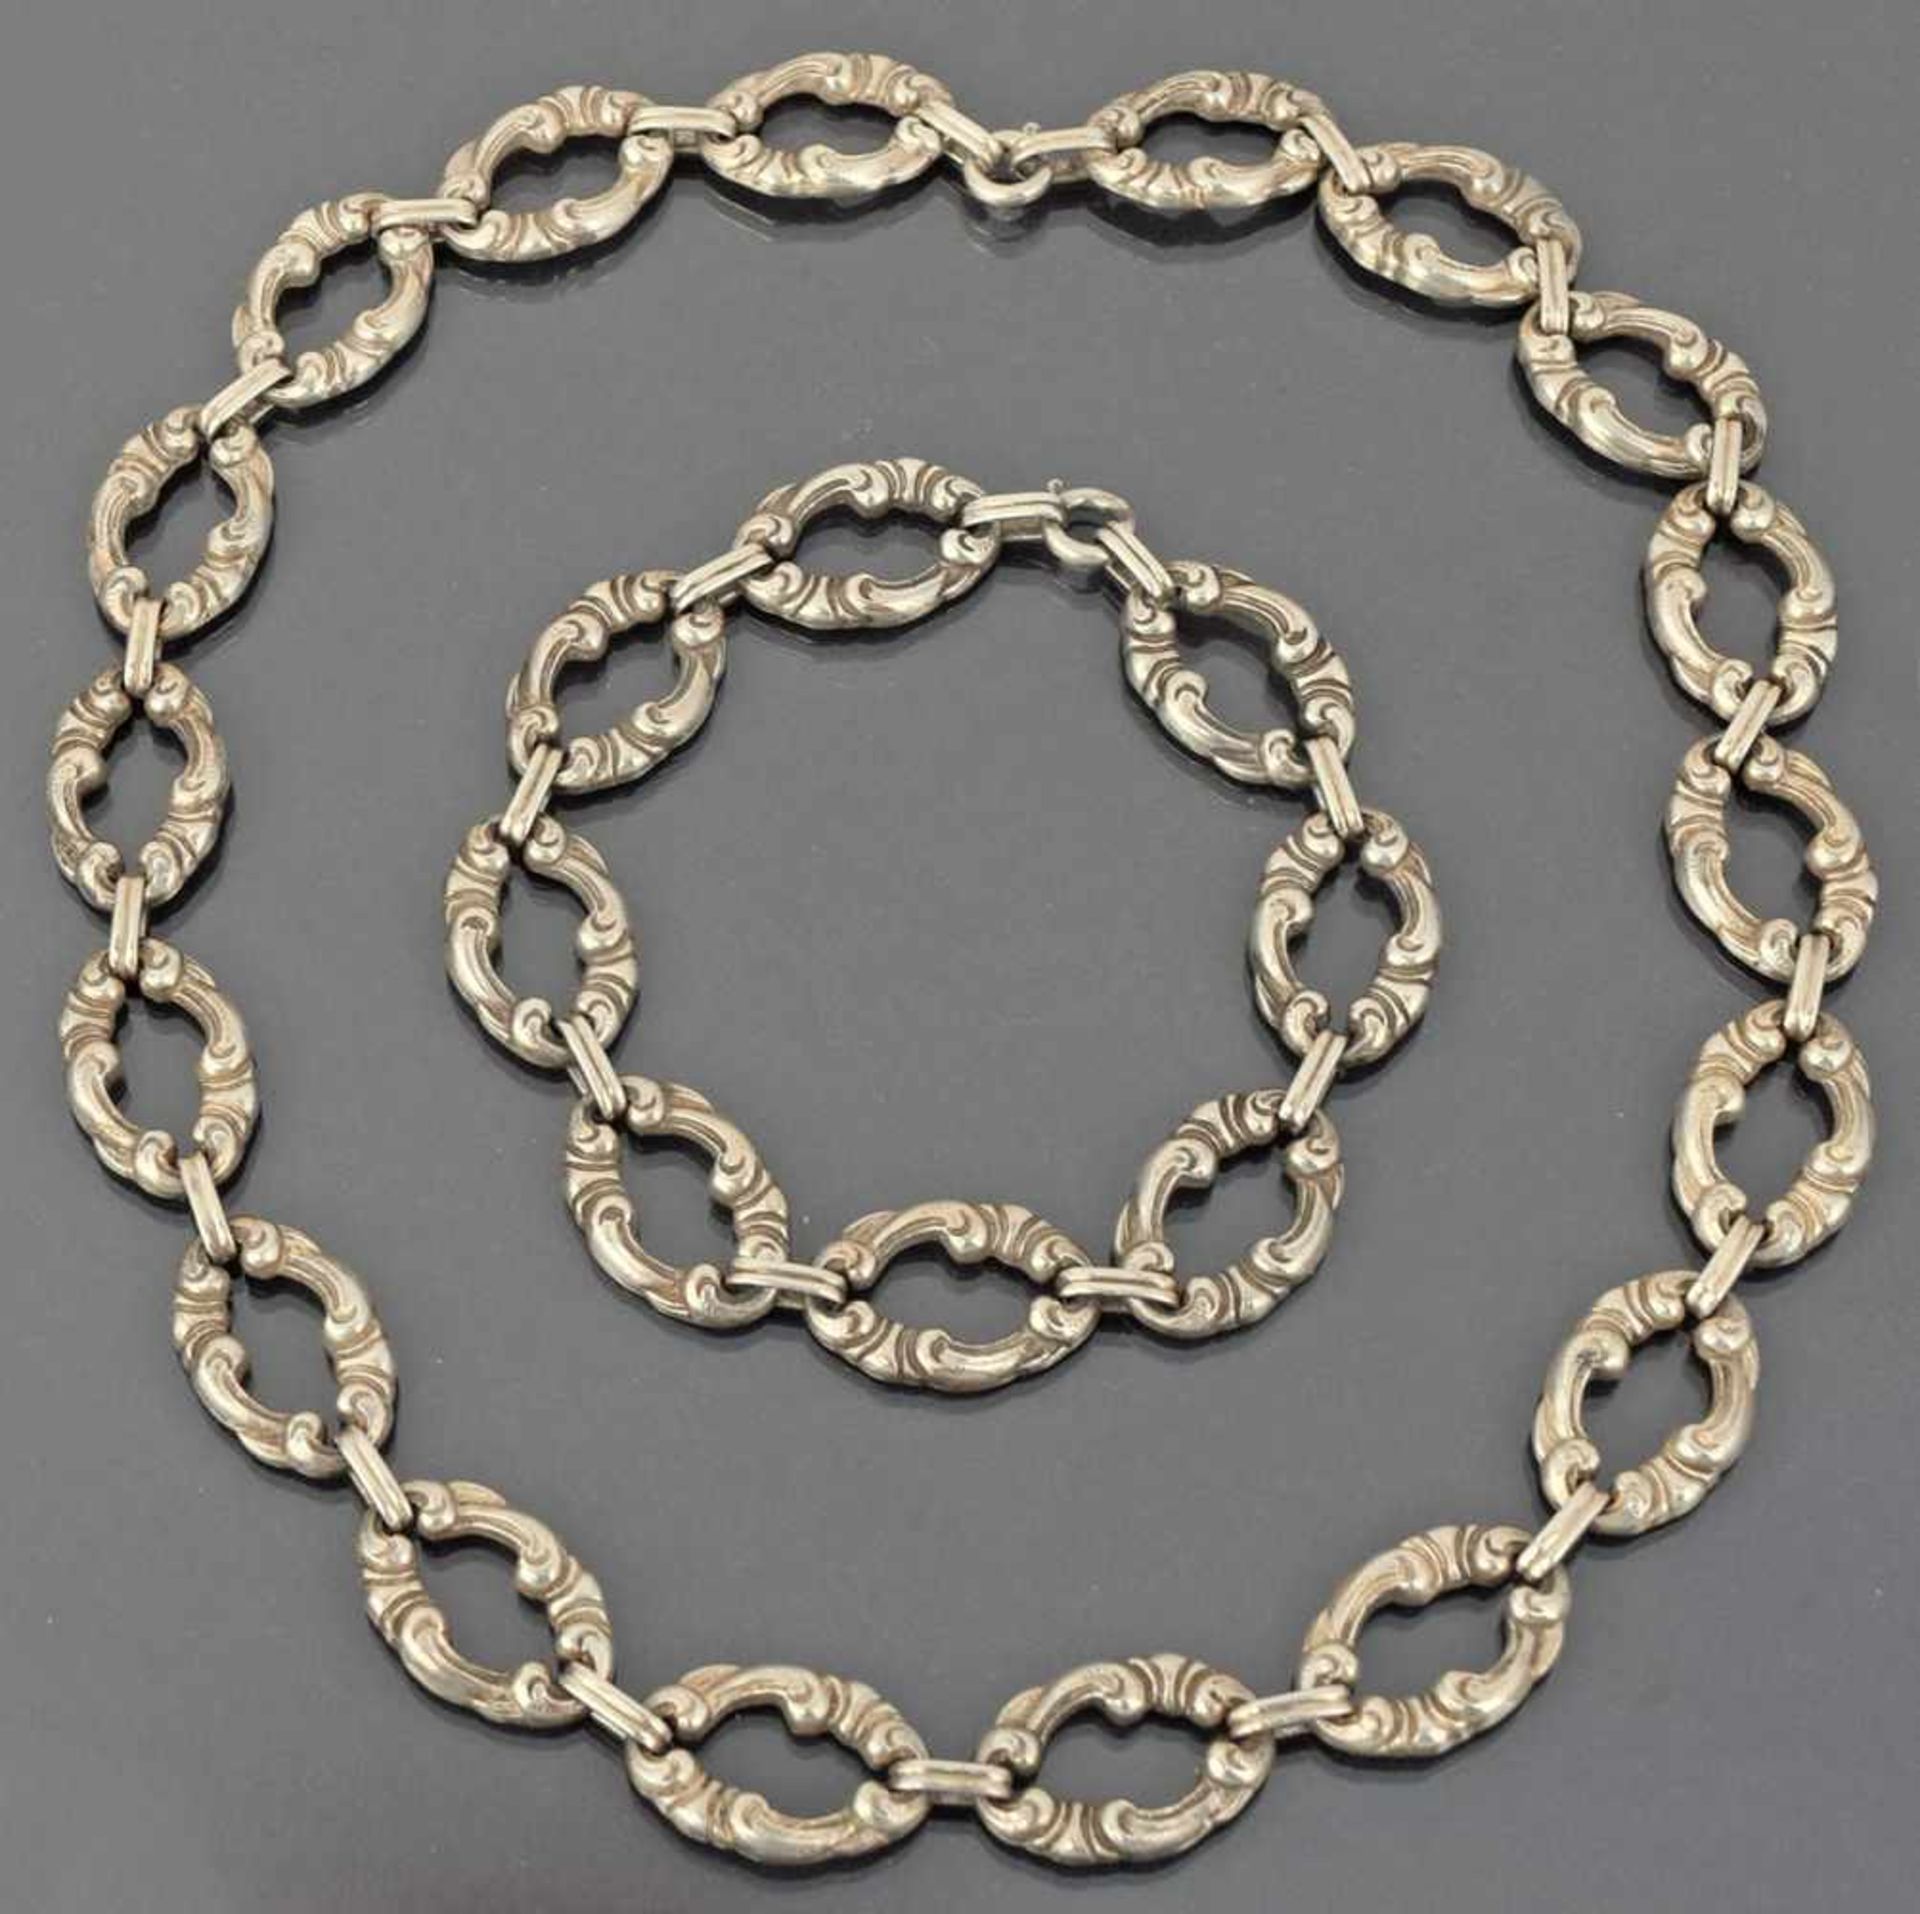 Schmuckset Silber 900, bestehend aus Collier und Armband, je ovale Ringglieder mit Volutenrelief - Bild 3 aus 3